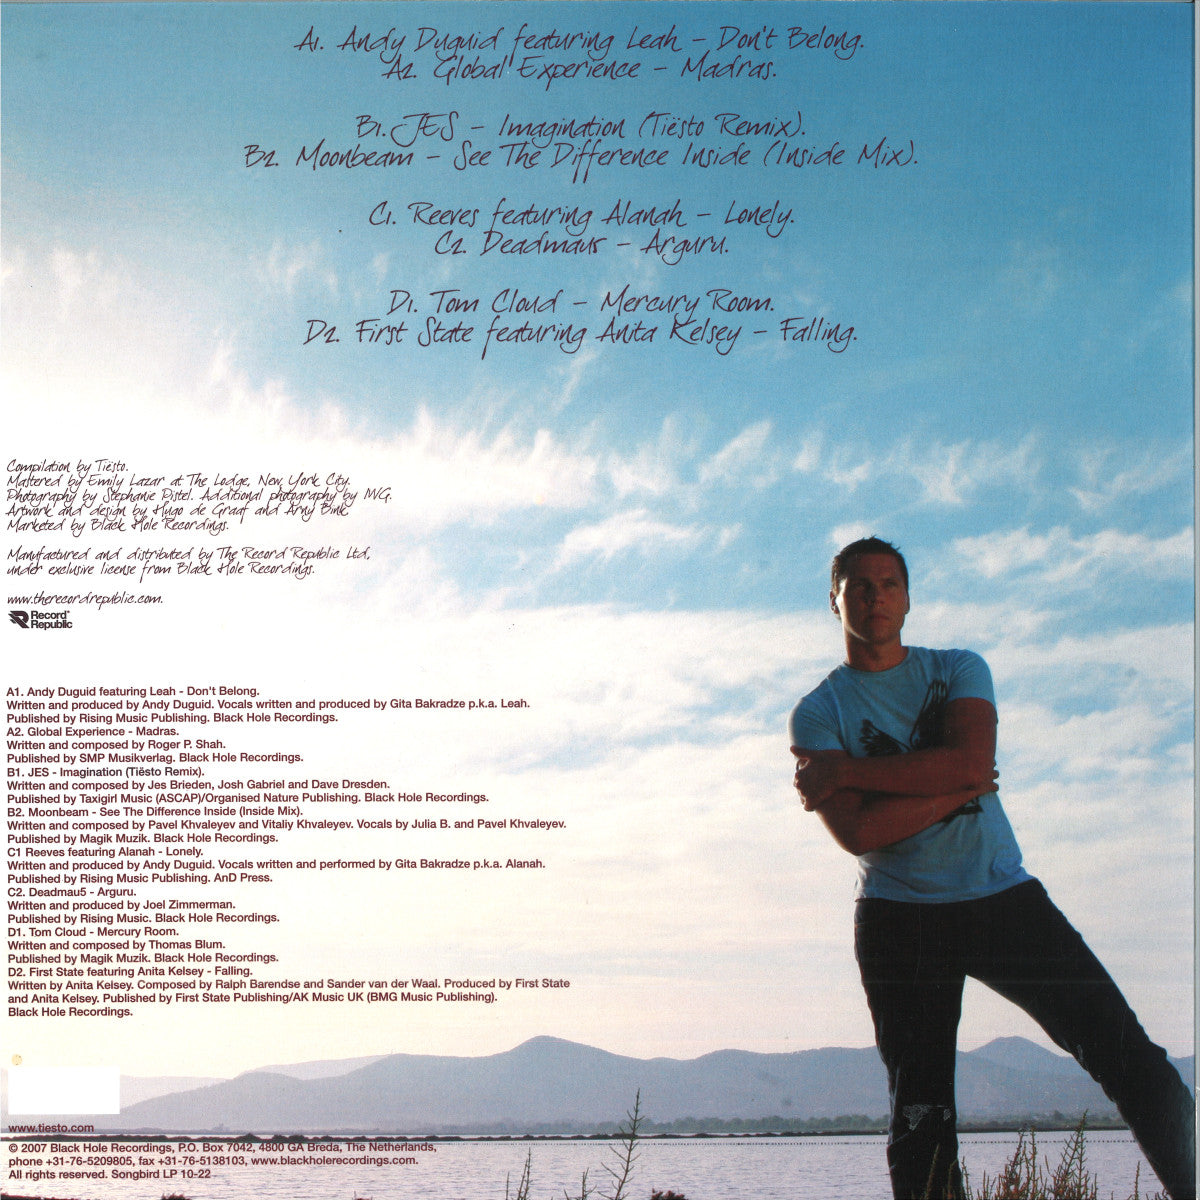 Tiesto - In Search Of Sunrise 06 - Ibiza LP 2x12"